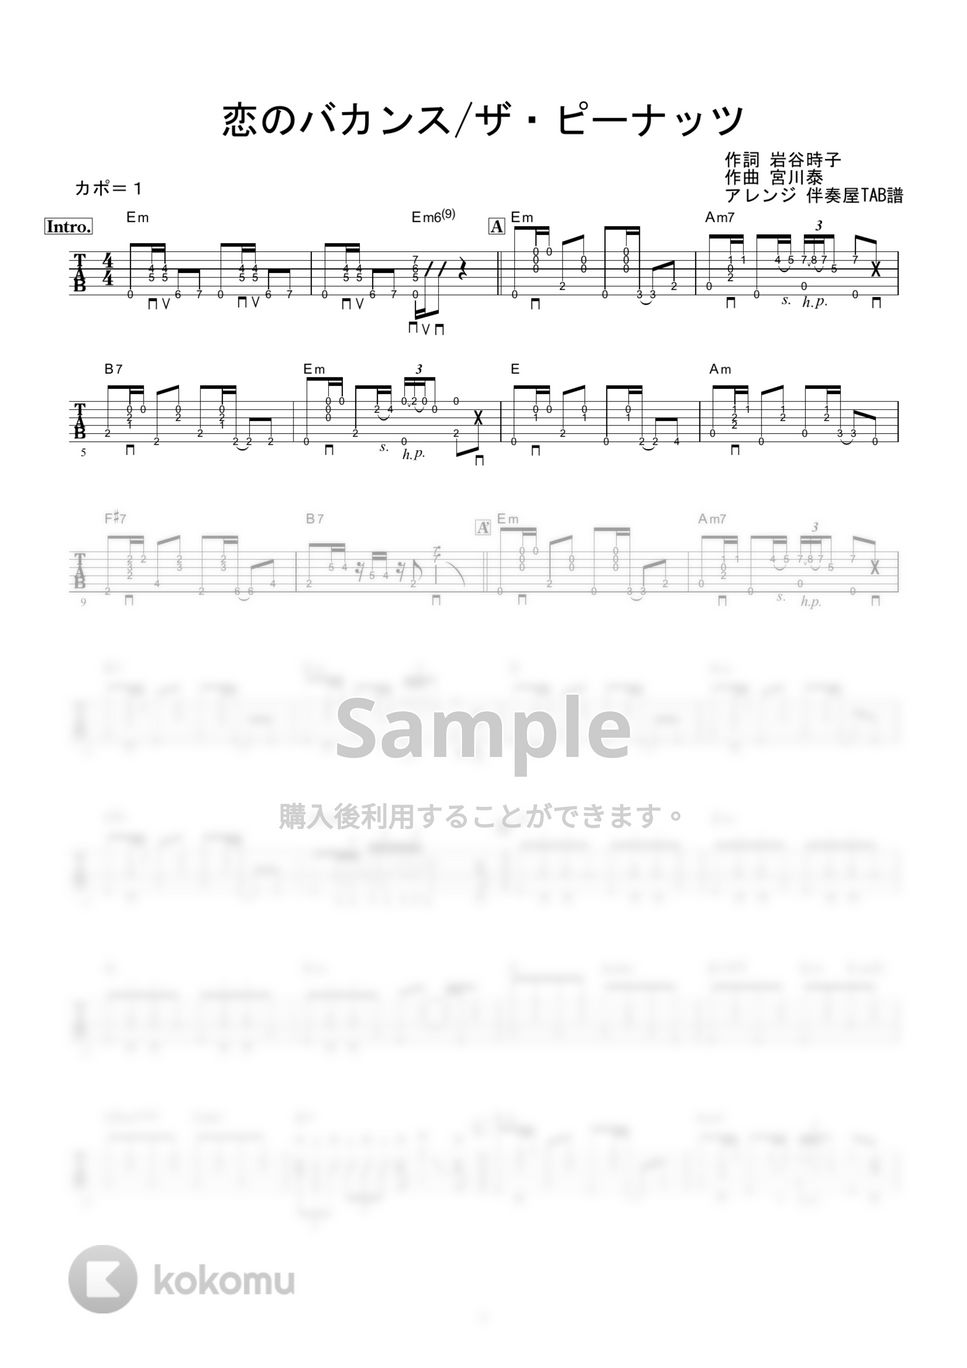 ザ・ピーナッツ - 恋のバカンス (ギター伴奏/イントロ・間奏ソロギター) by 伴奏屋TAB譜